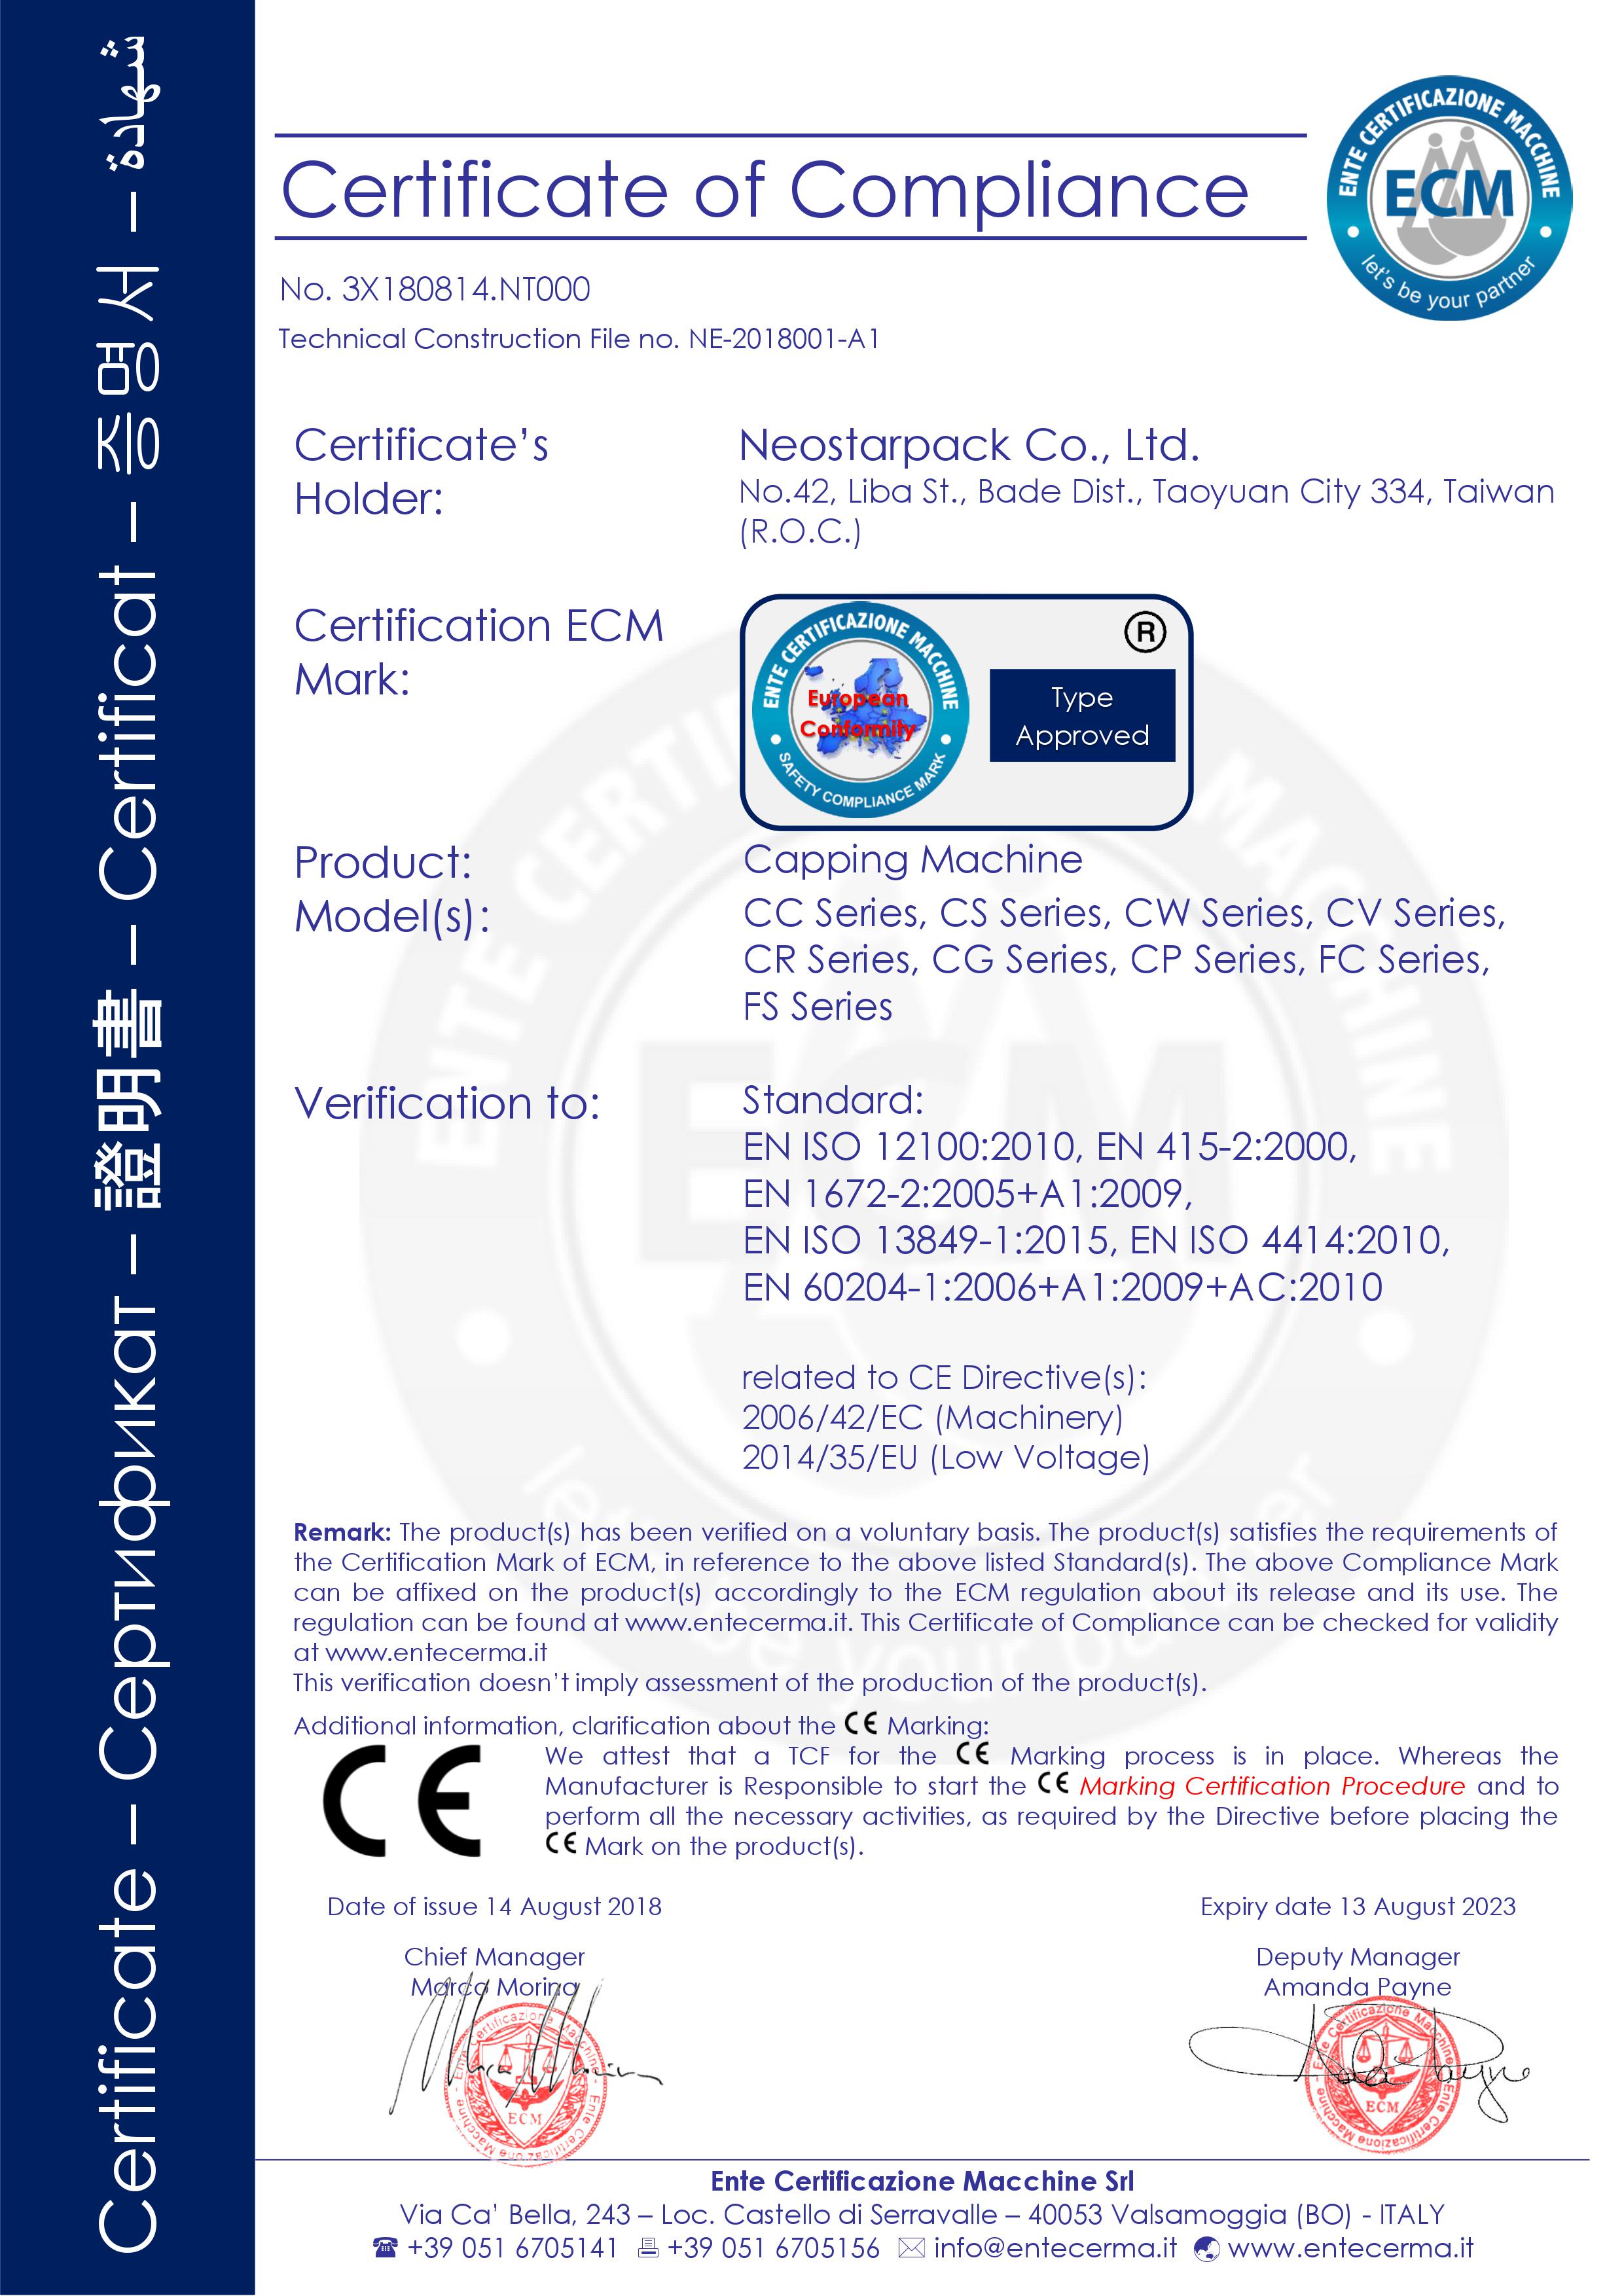 Máquina tapadora de Neostarpack con certificación CE